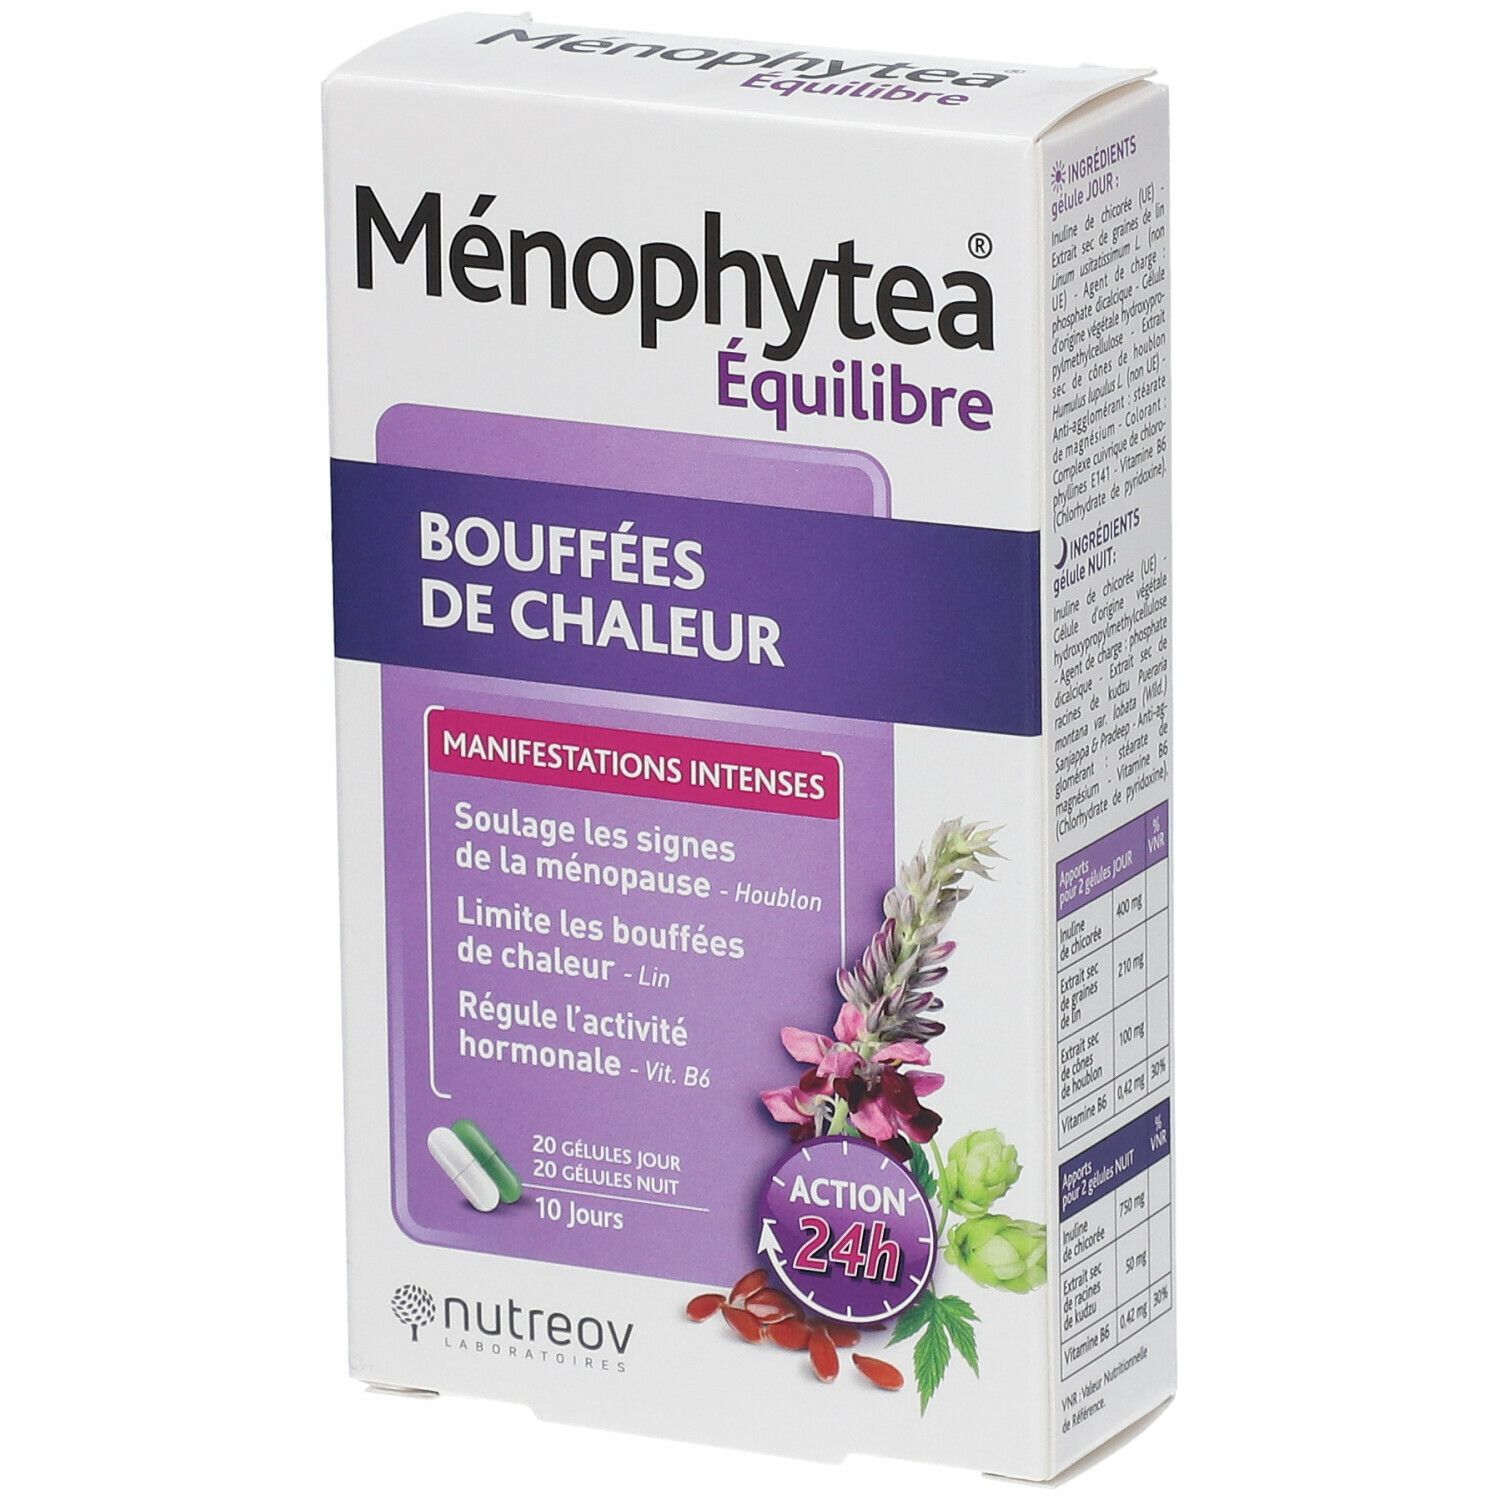 Ménophytea® Bouffées de Chaleur  shoppharmacie.fr